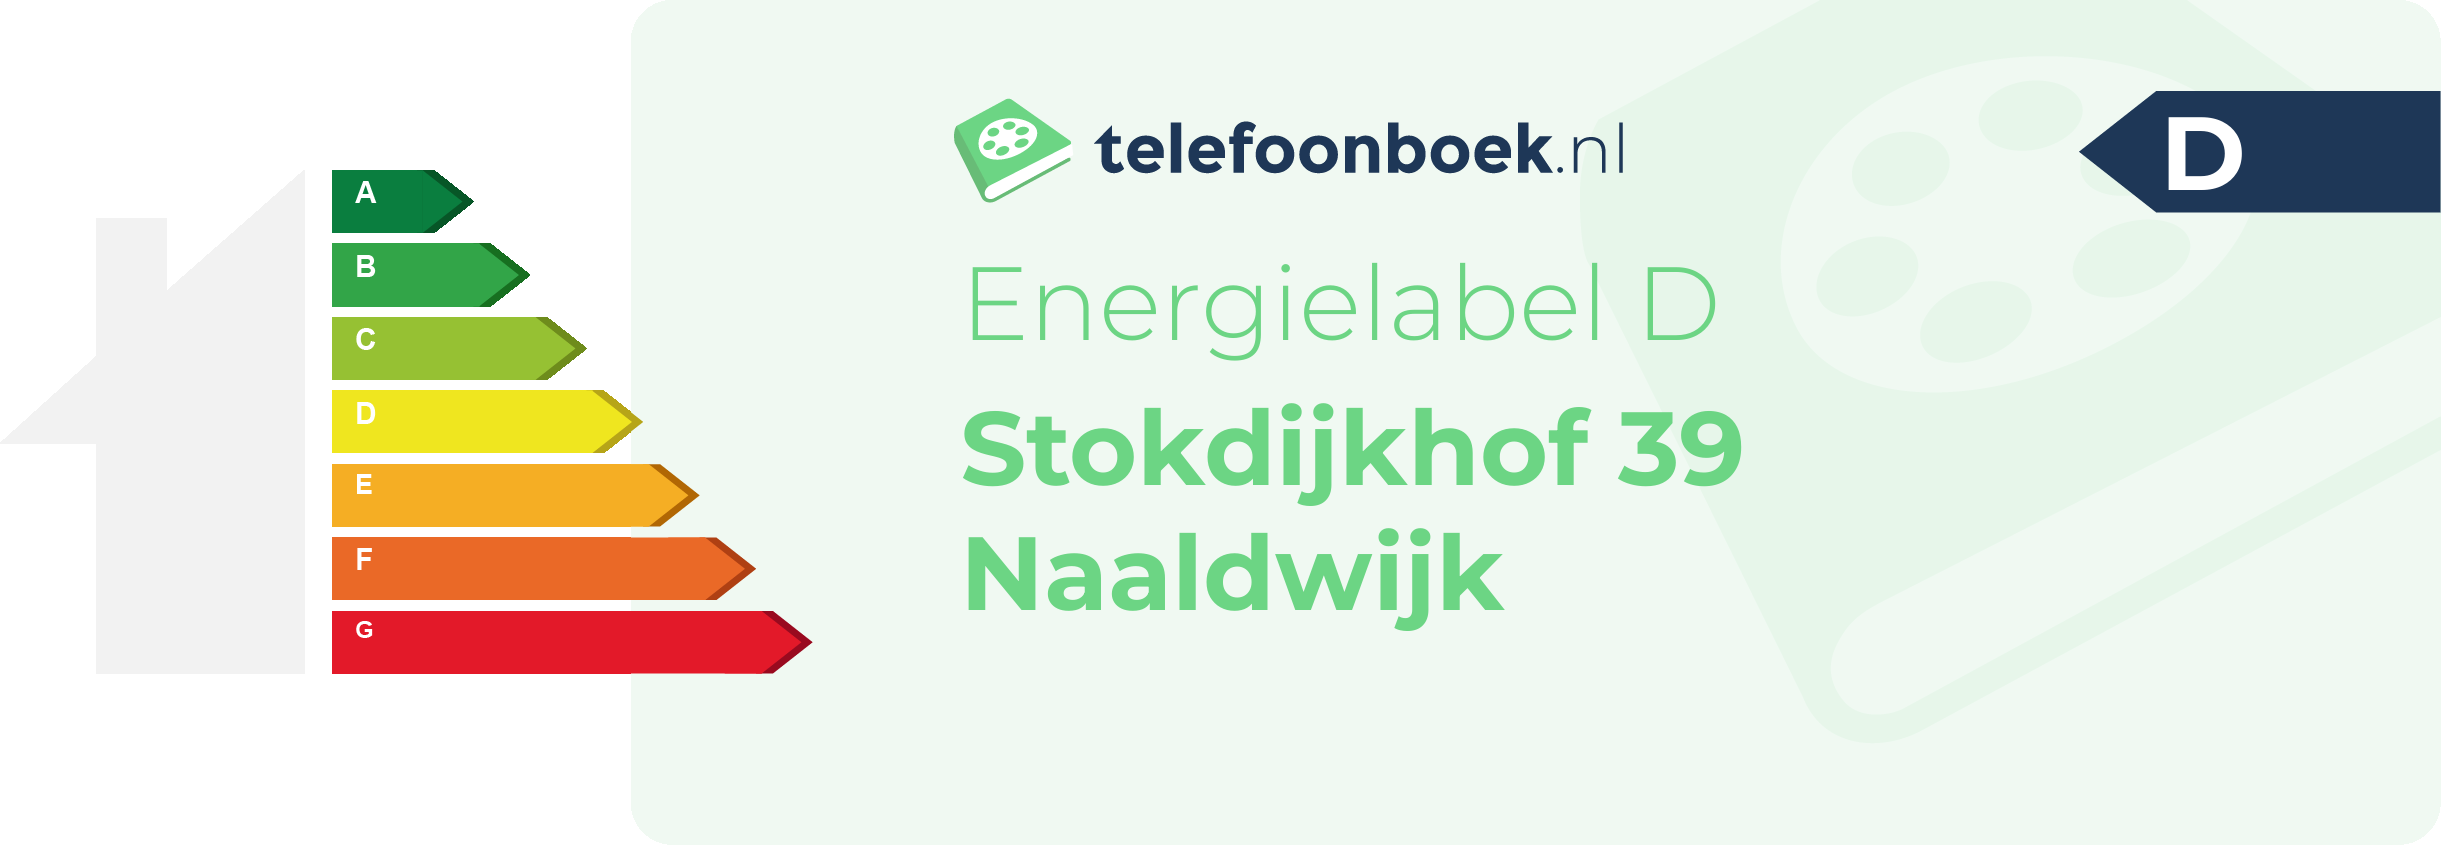 Energielabel Stokdijkhof 39 Naaldwijk